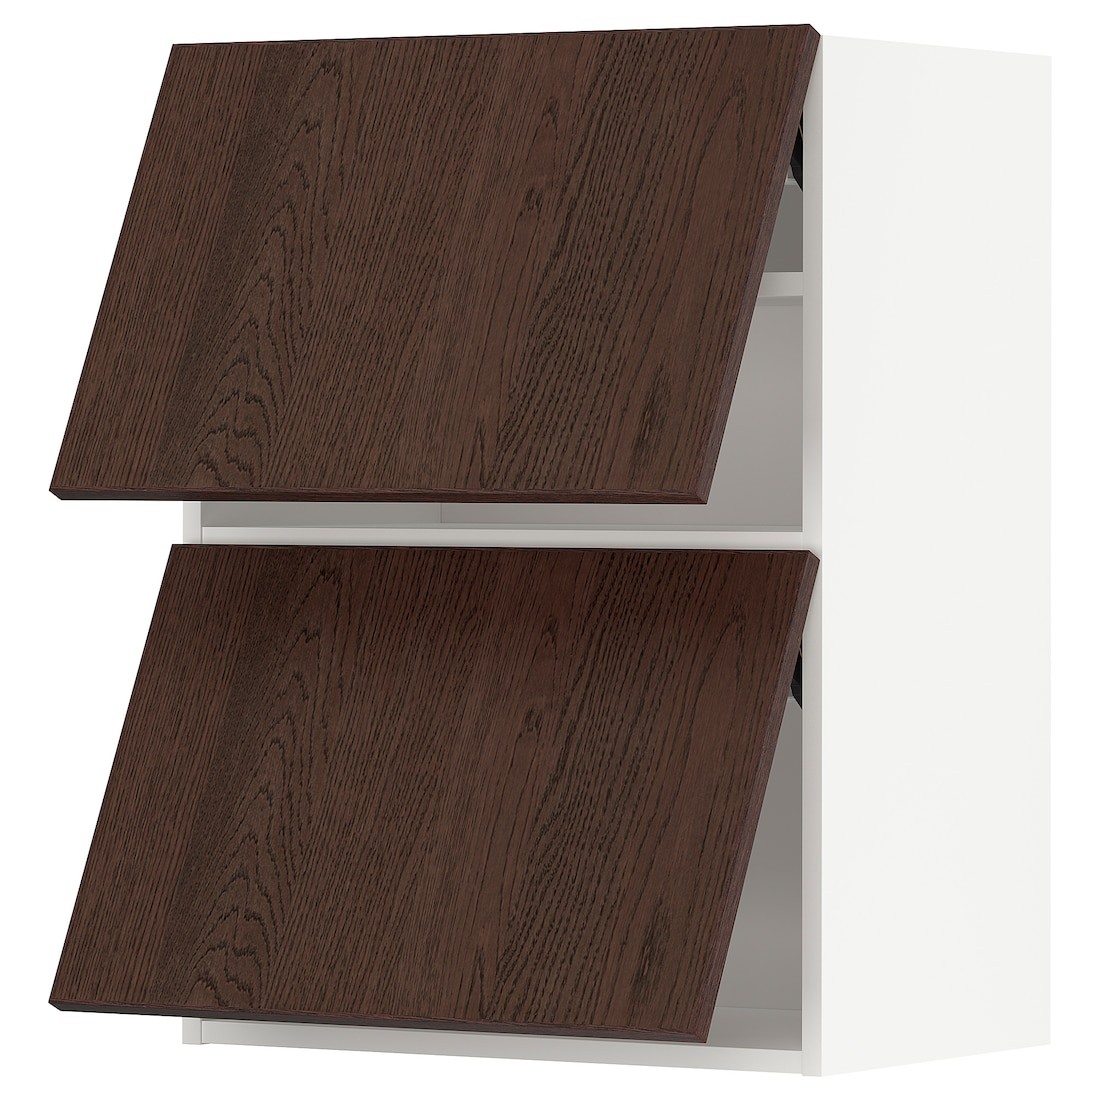 METOD МЕТОД Навесной горизонтальный шкаф / 2 двери, белый / Sinarp коричневый, 60x80 см